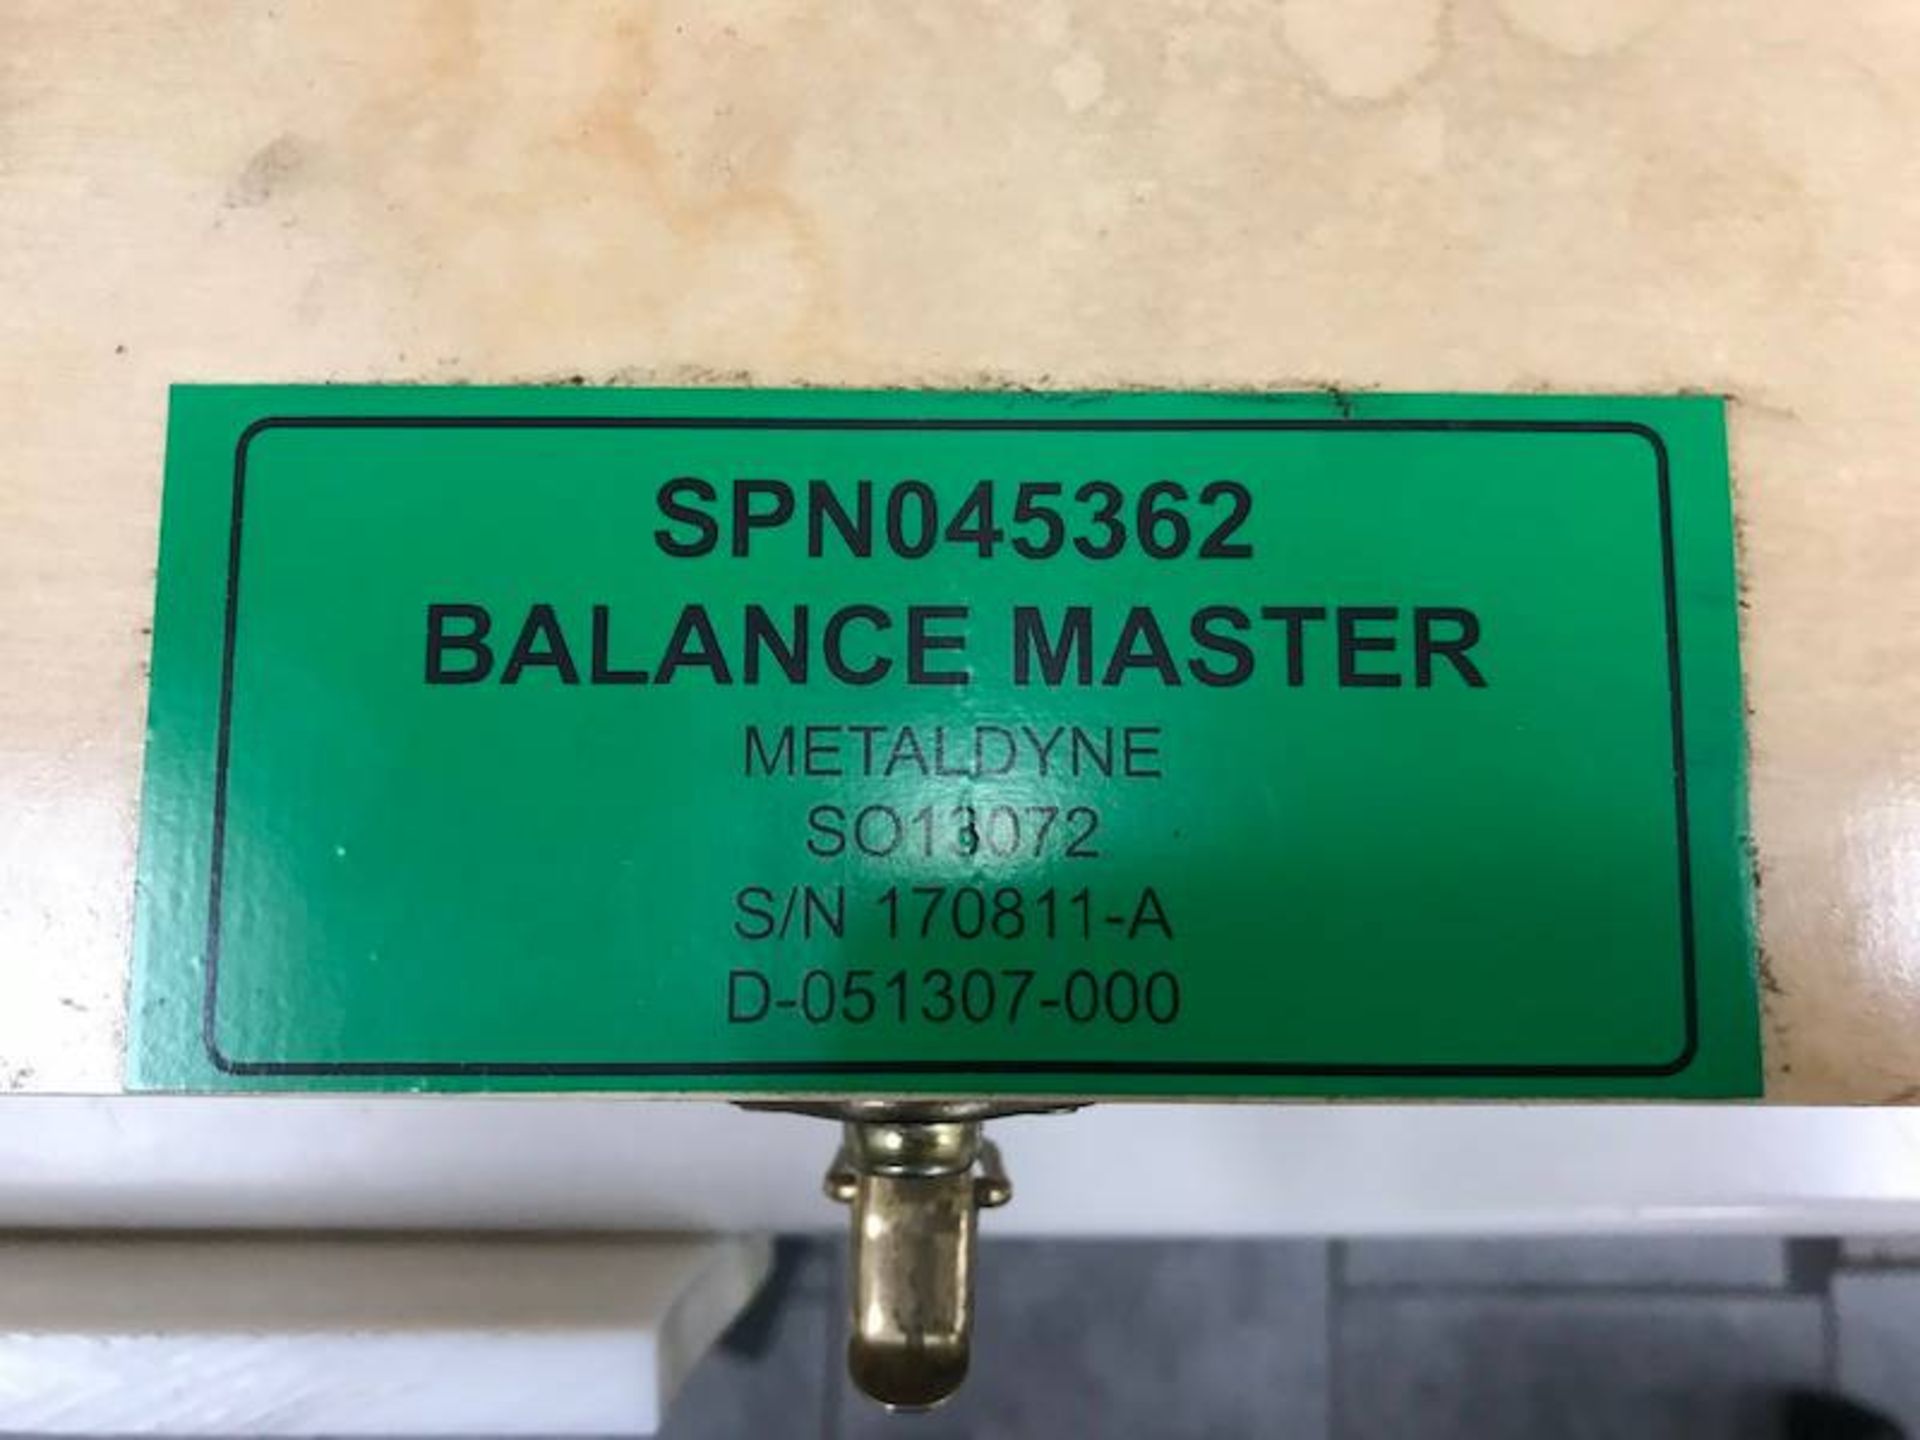 SPN045362 Balance Master - Image 3 of 3